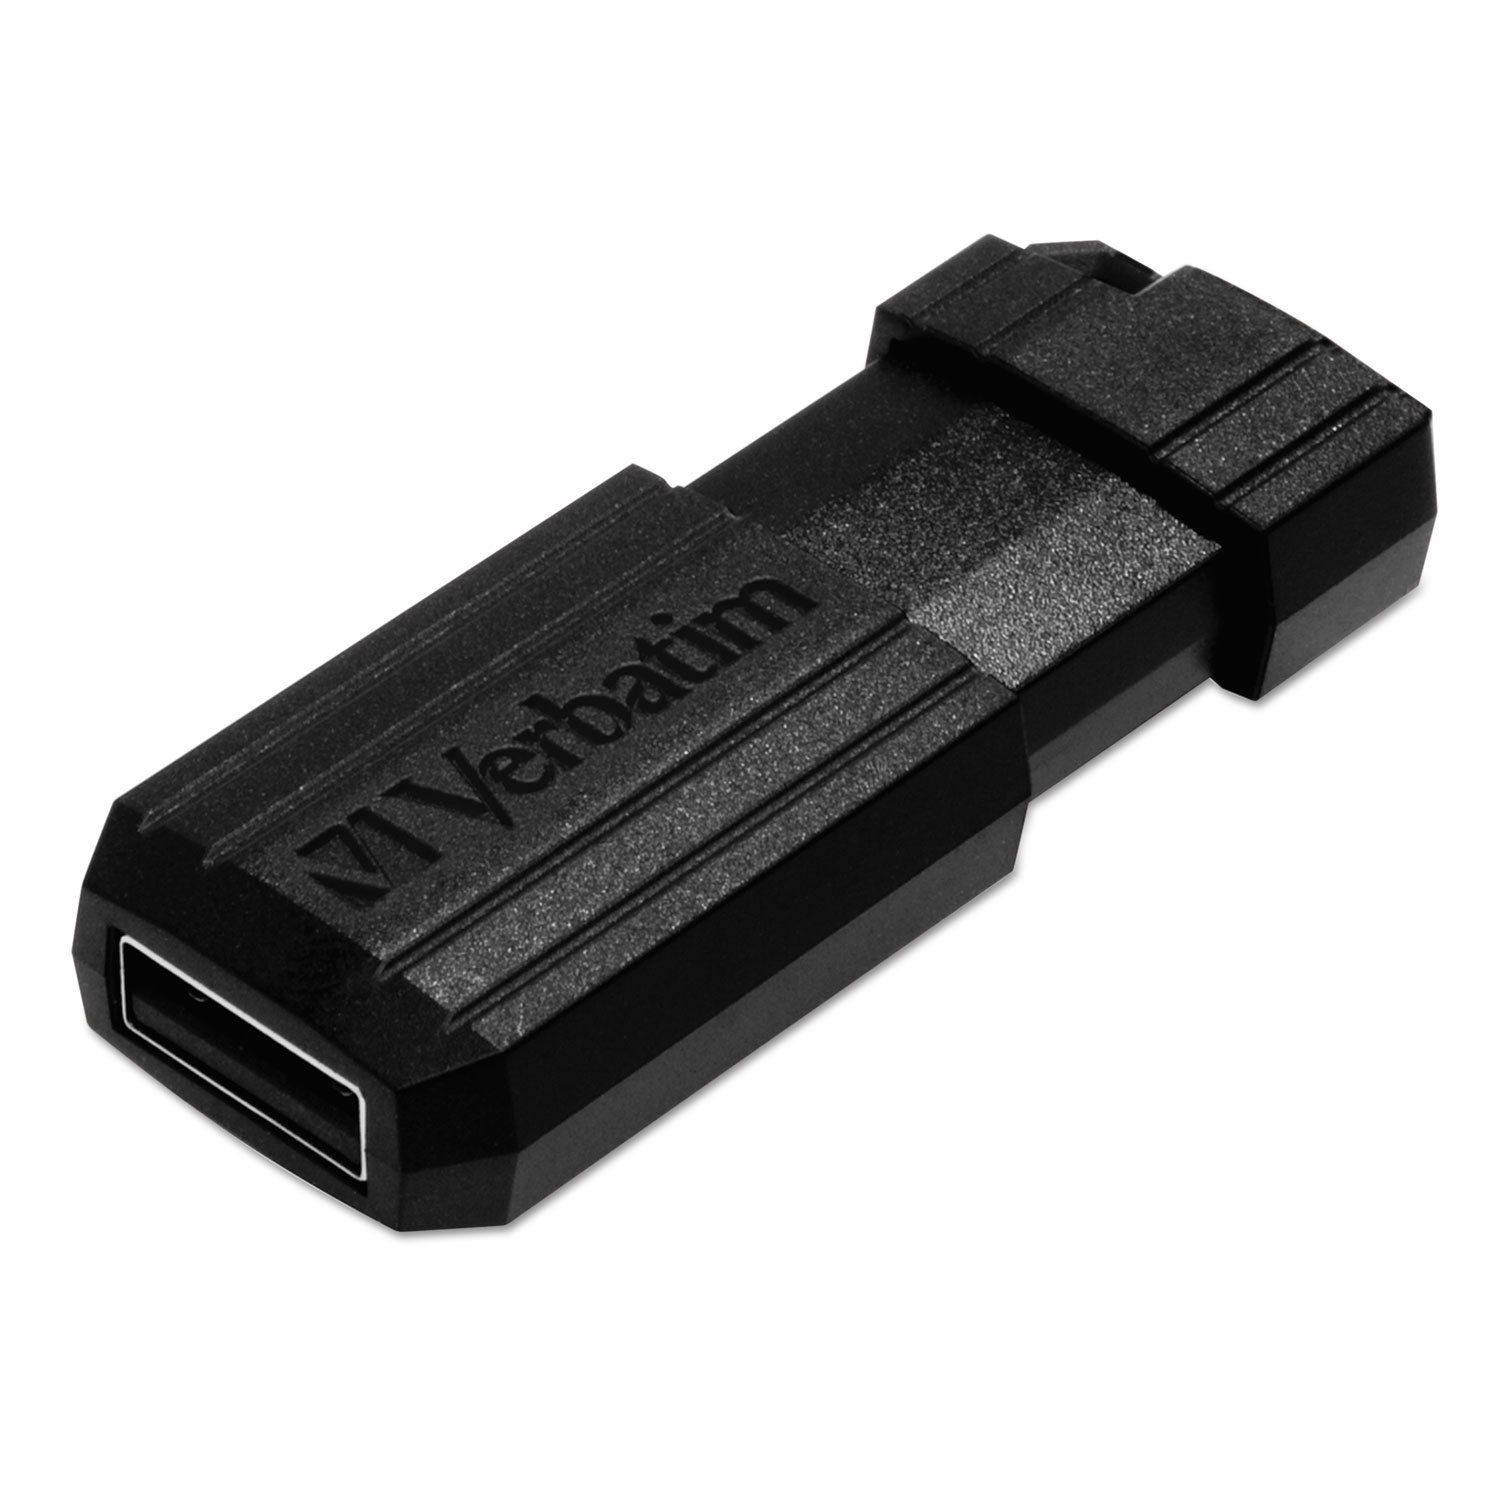 PinStripe USB Flash Drive, 32GB, Black